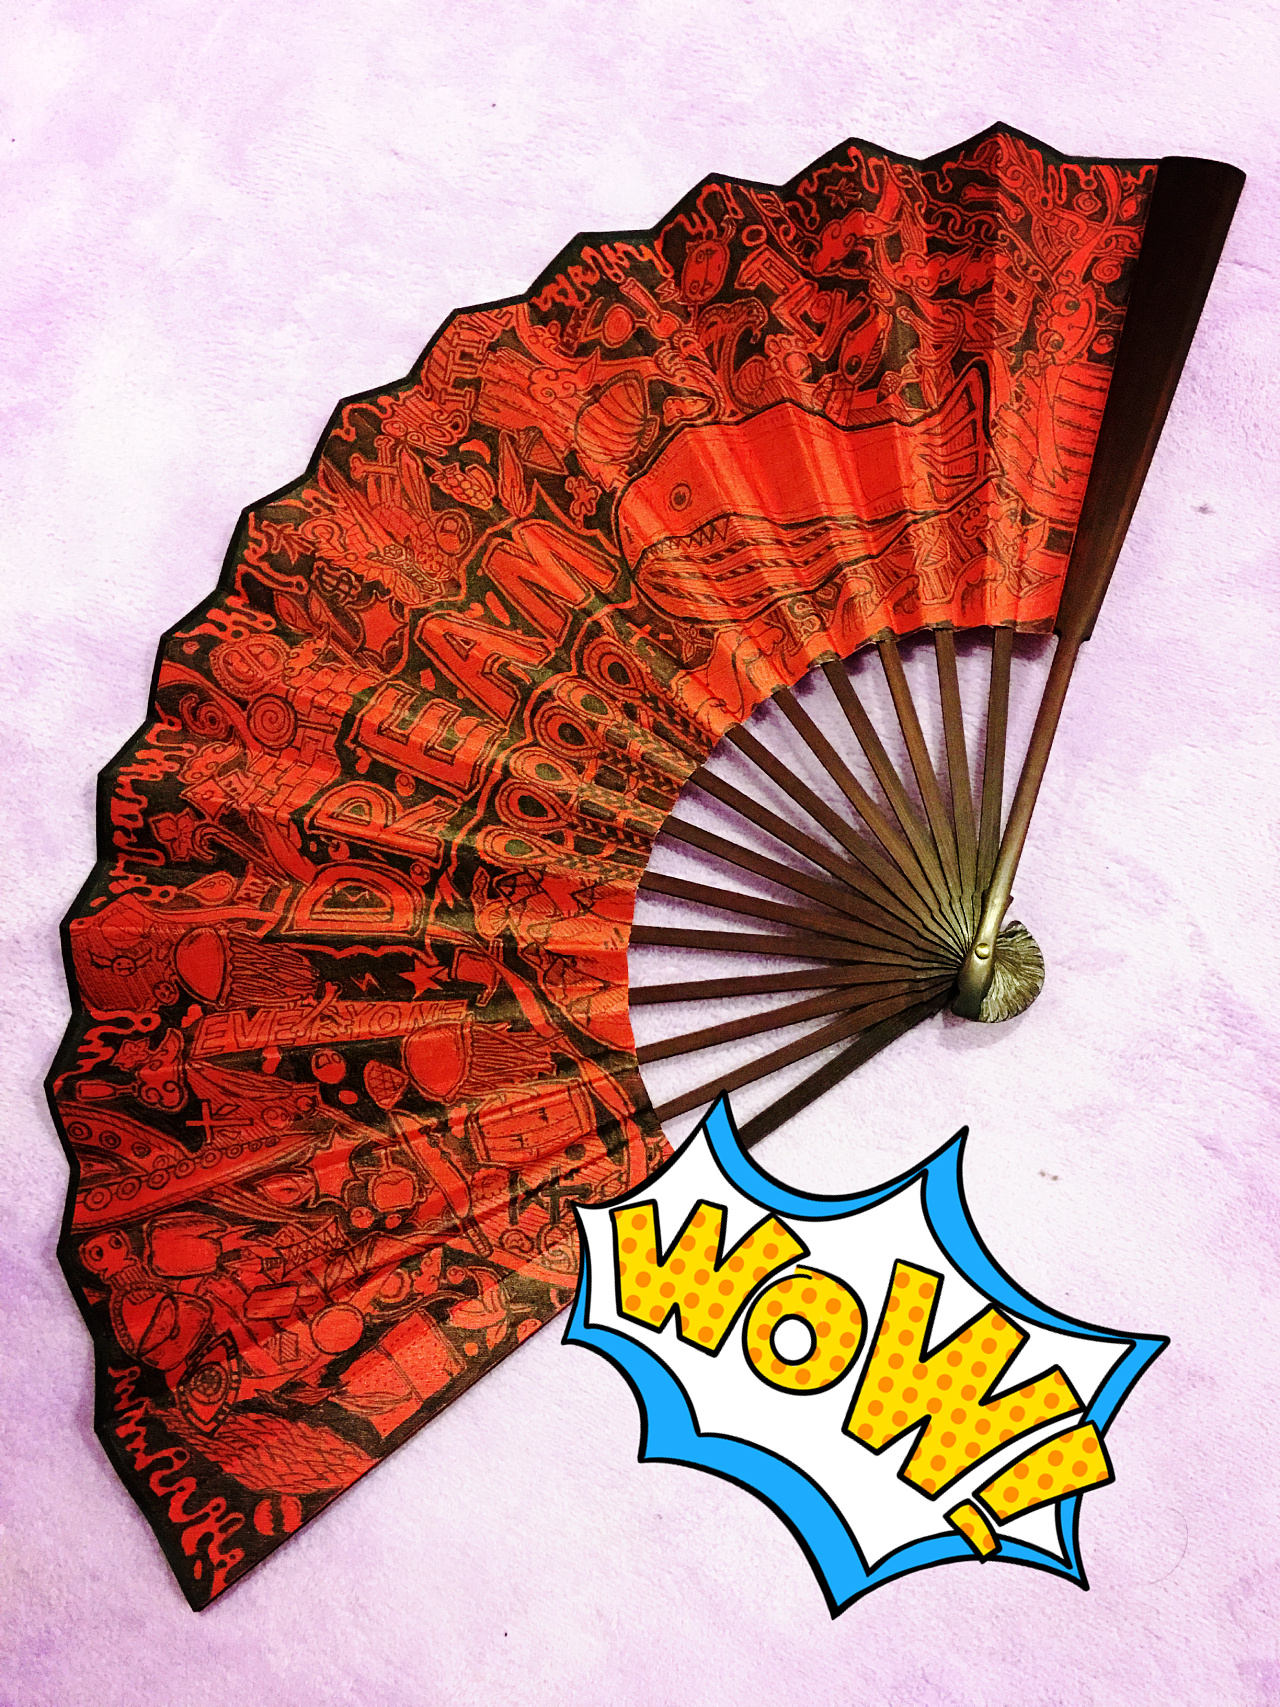 扇子折扇中国风舞蹈扇女夏季折叠扇古装日式小复古布古典古风折扇-阿里巴巴